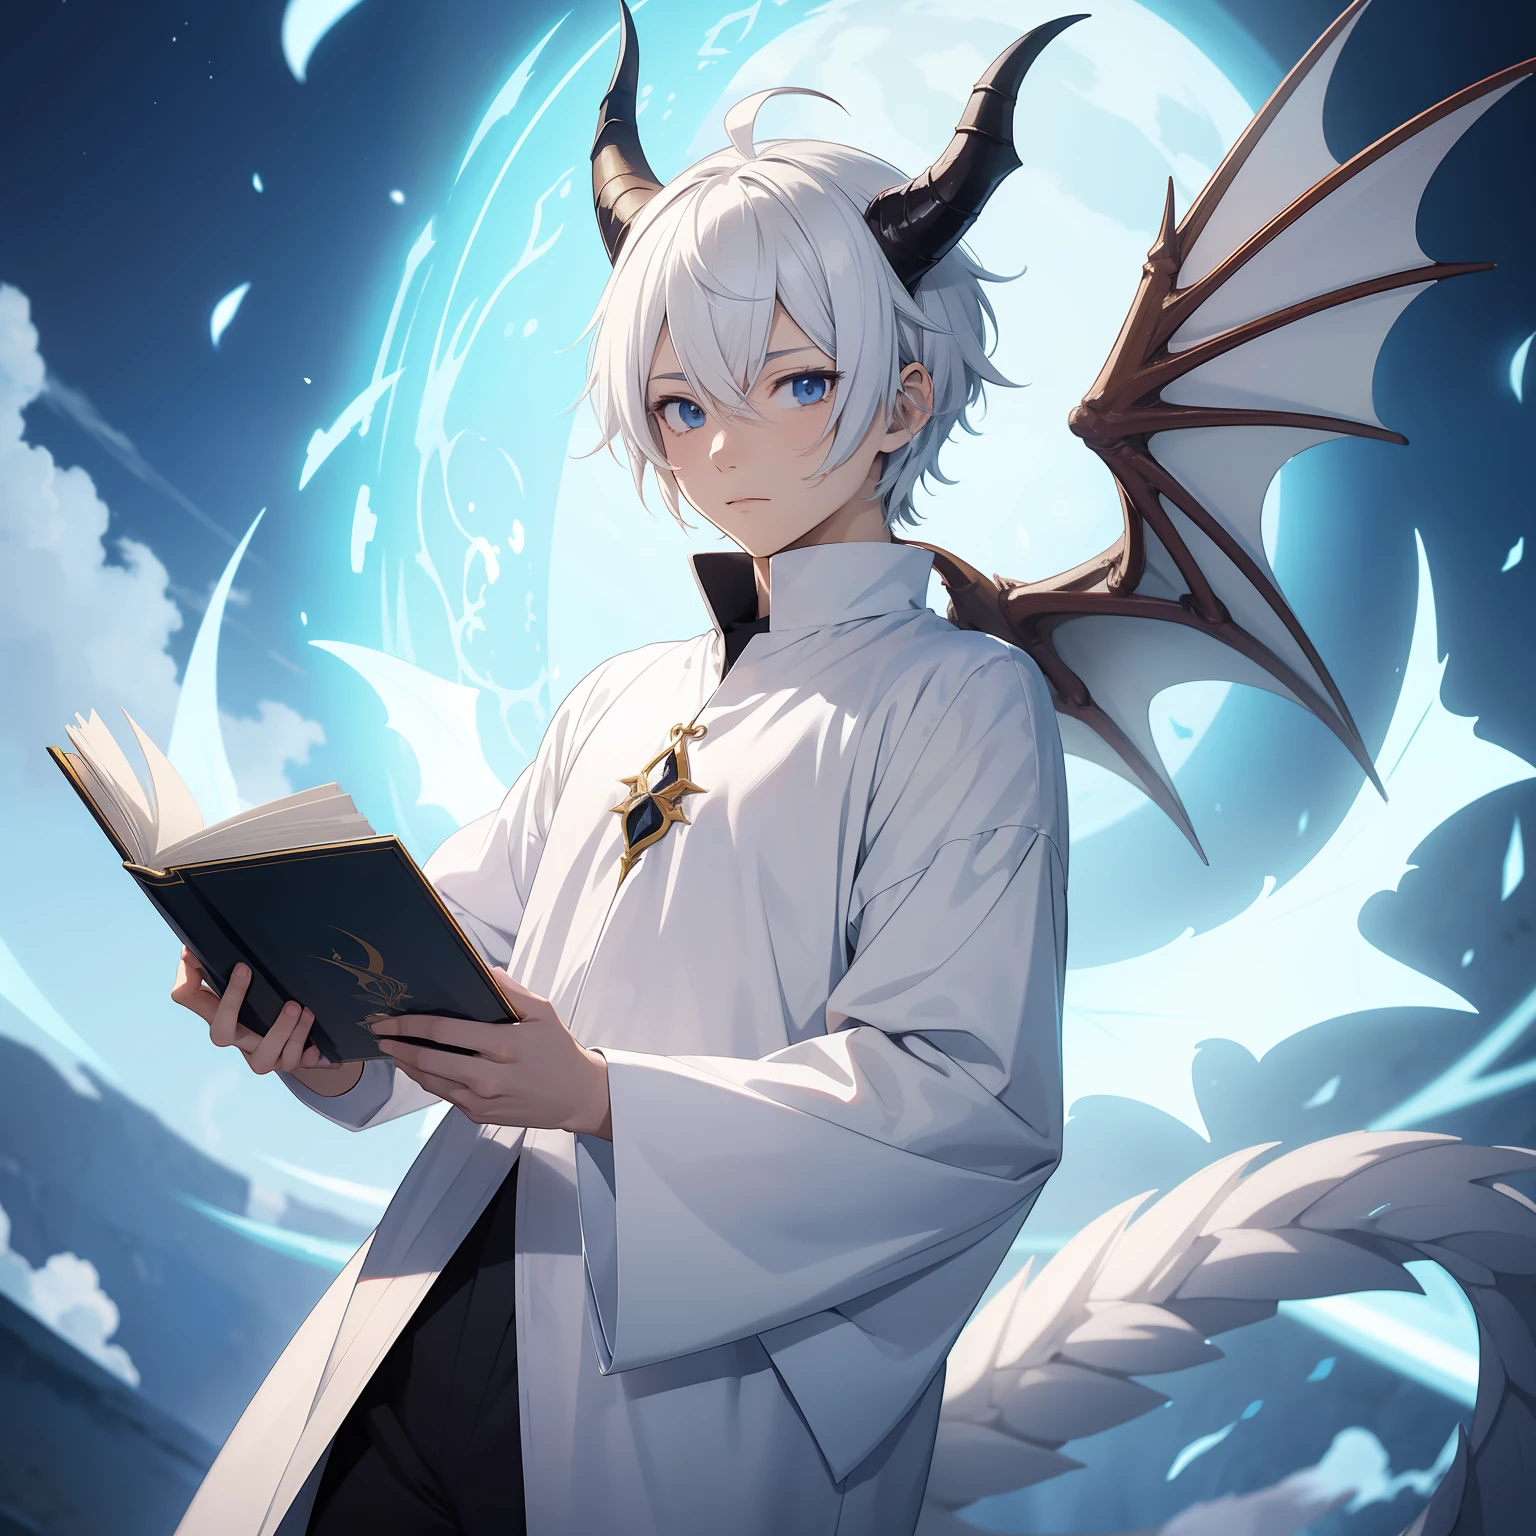 аниме-мальчик в белой одежде волшебника держит летающую книгу, рога дракона, хвост дракона, короткие белые волосы